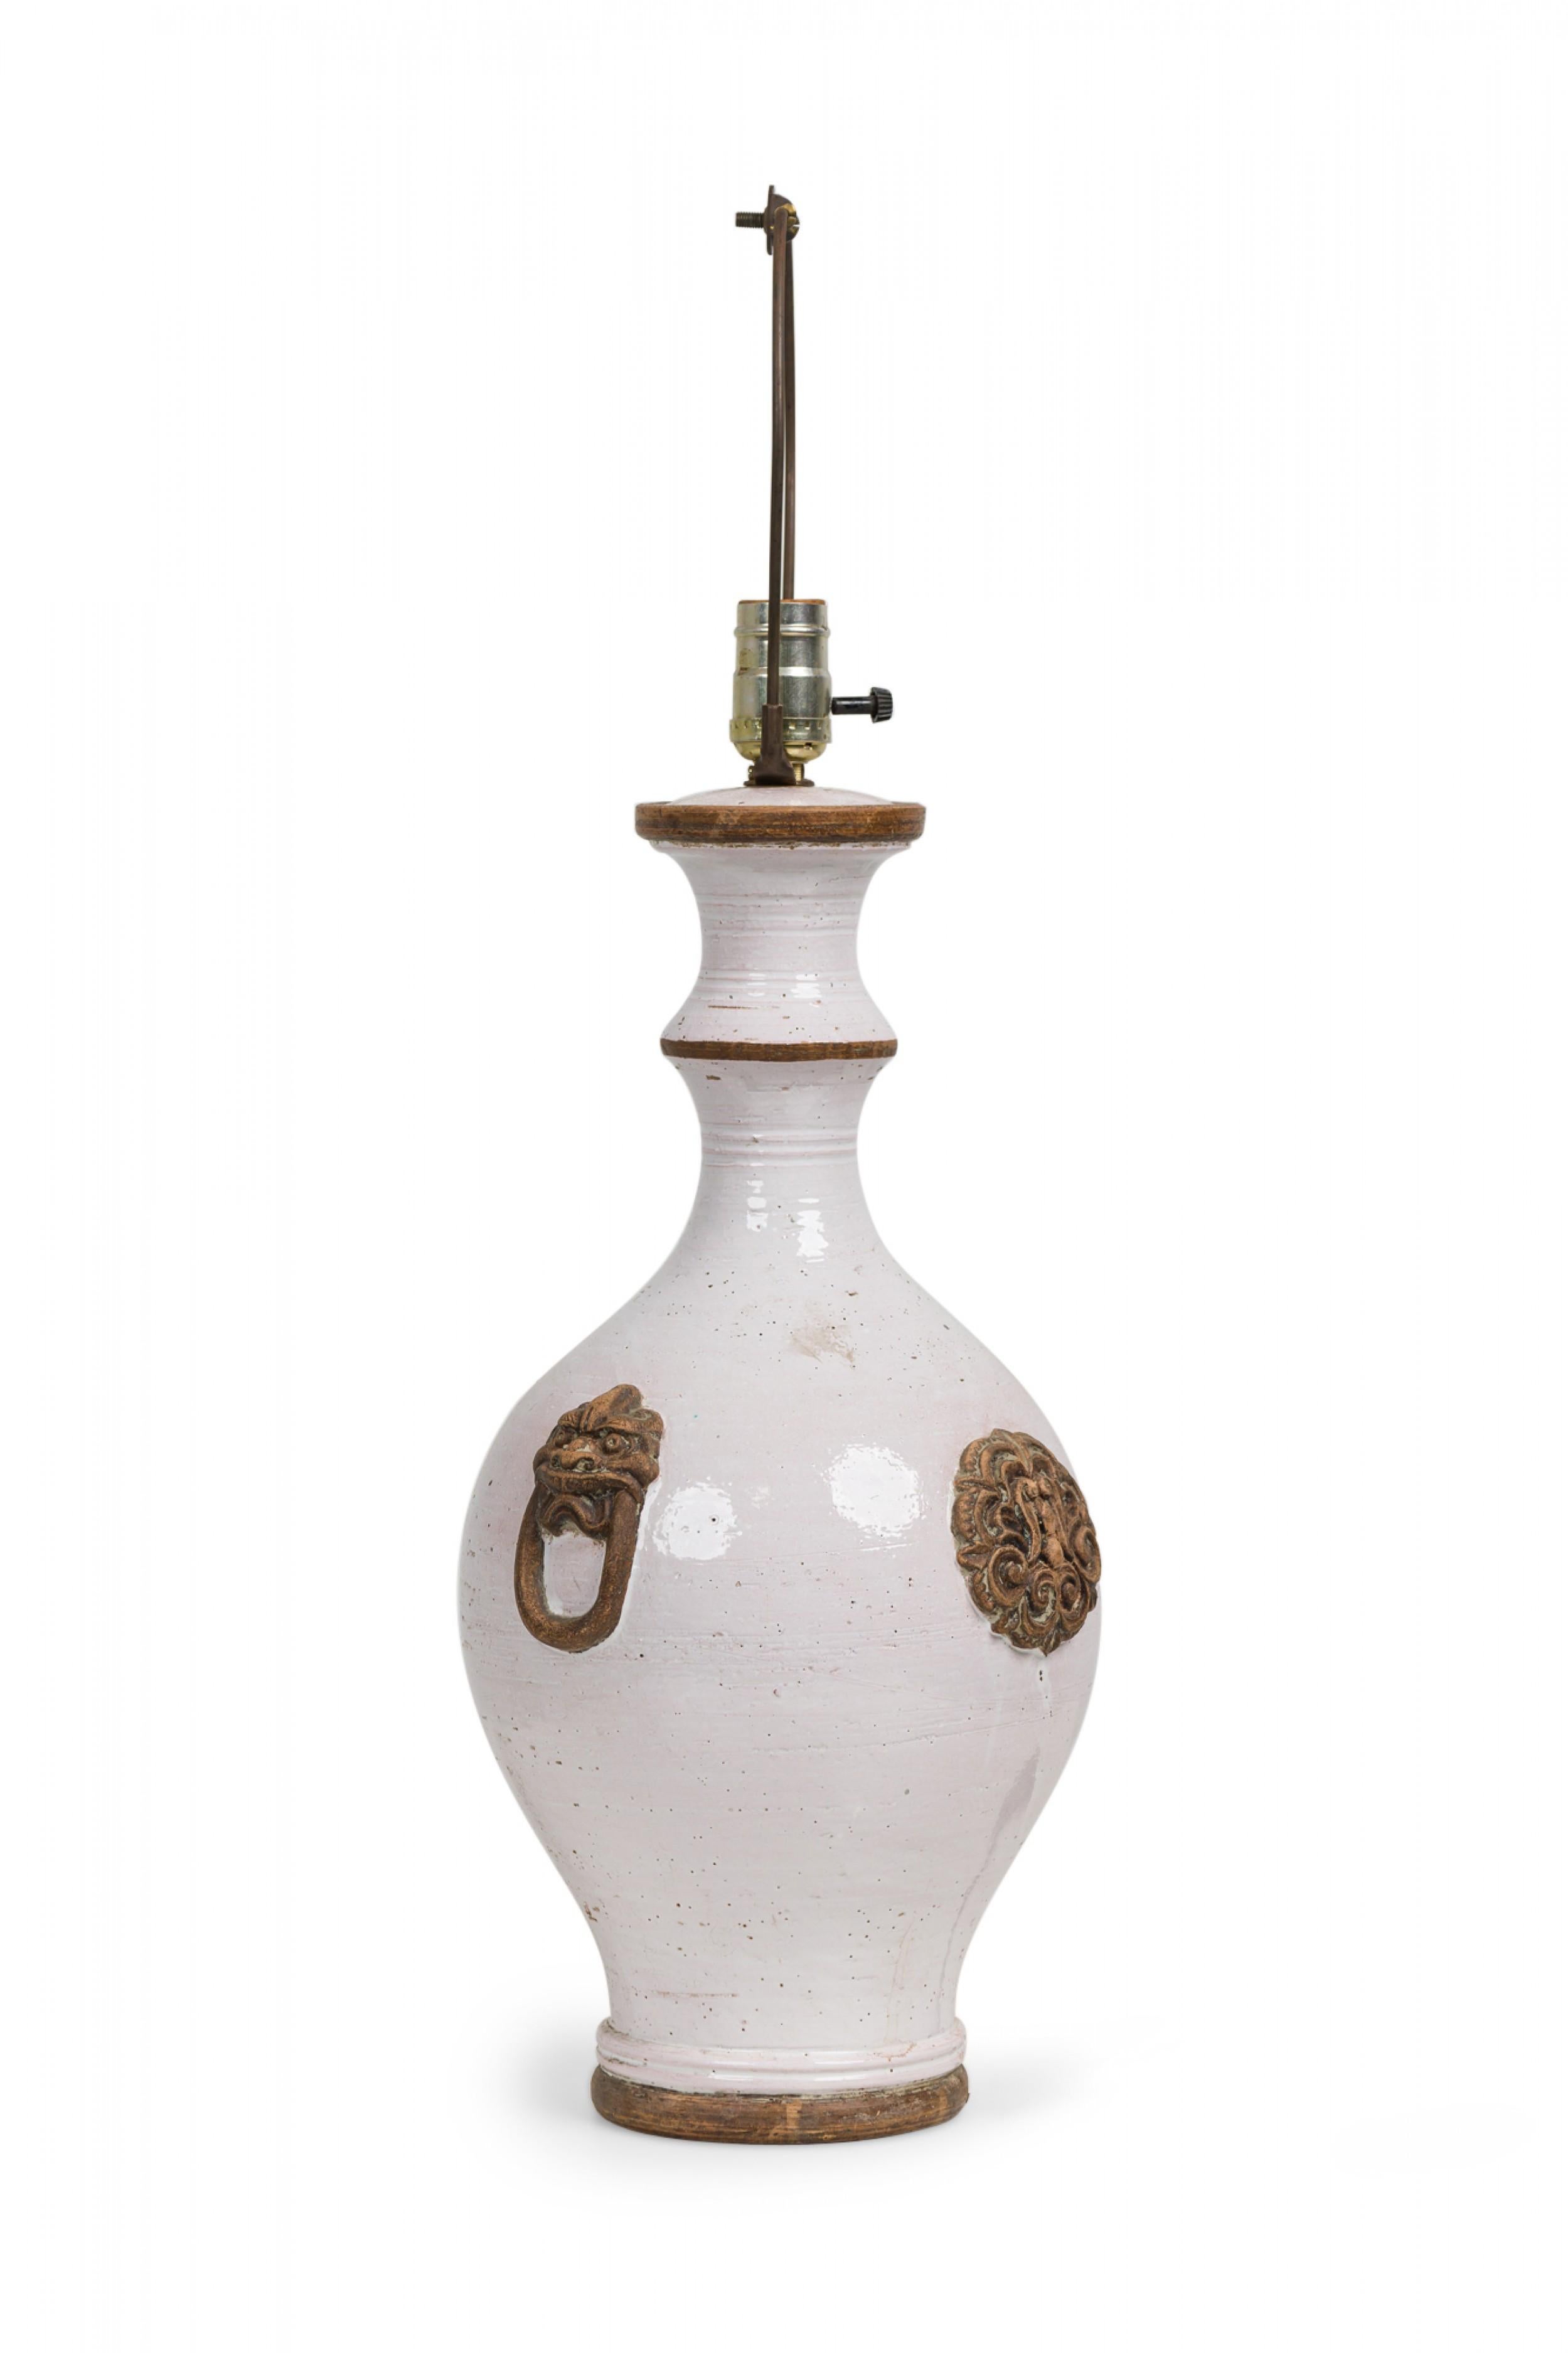 Lampe de table en forme d'urne ou de vase en céramique italienne du milieu du siècle dernier, de style Hollywood Regency, de forme balustre, dotée d'un col à double taille et de deux rebords émaillés avoine mat, menant à une prise d'interrupteur et